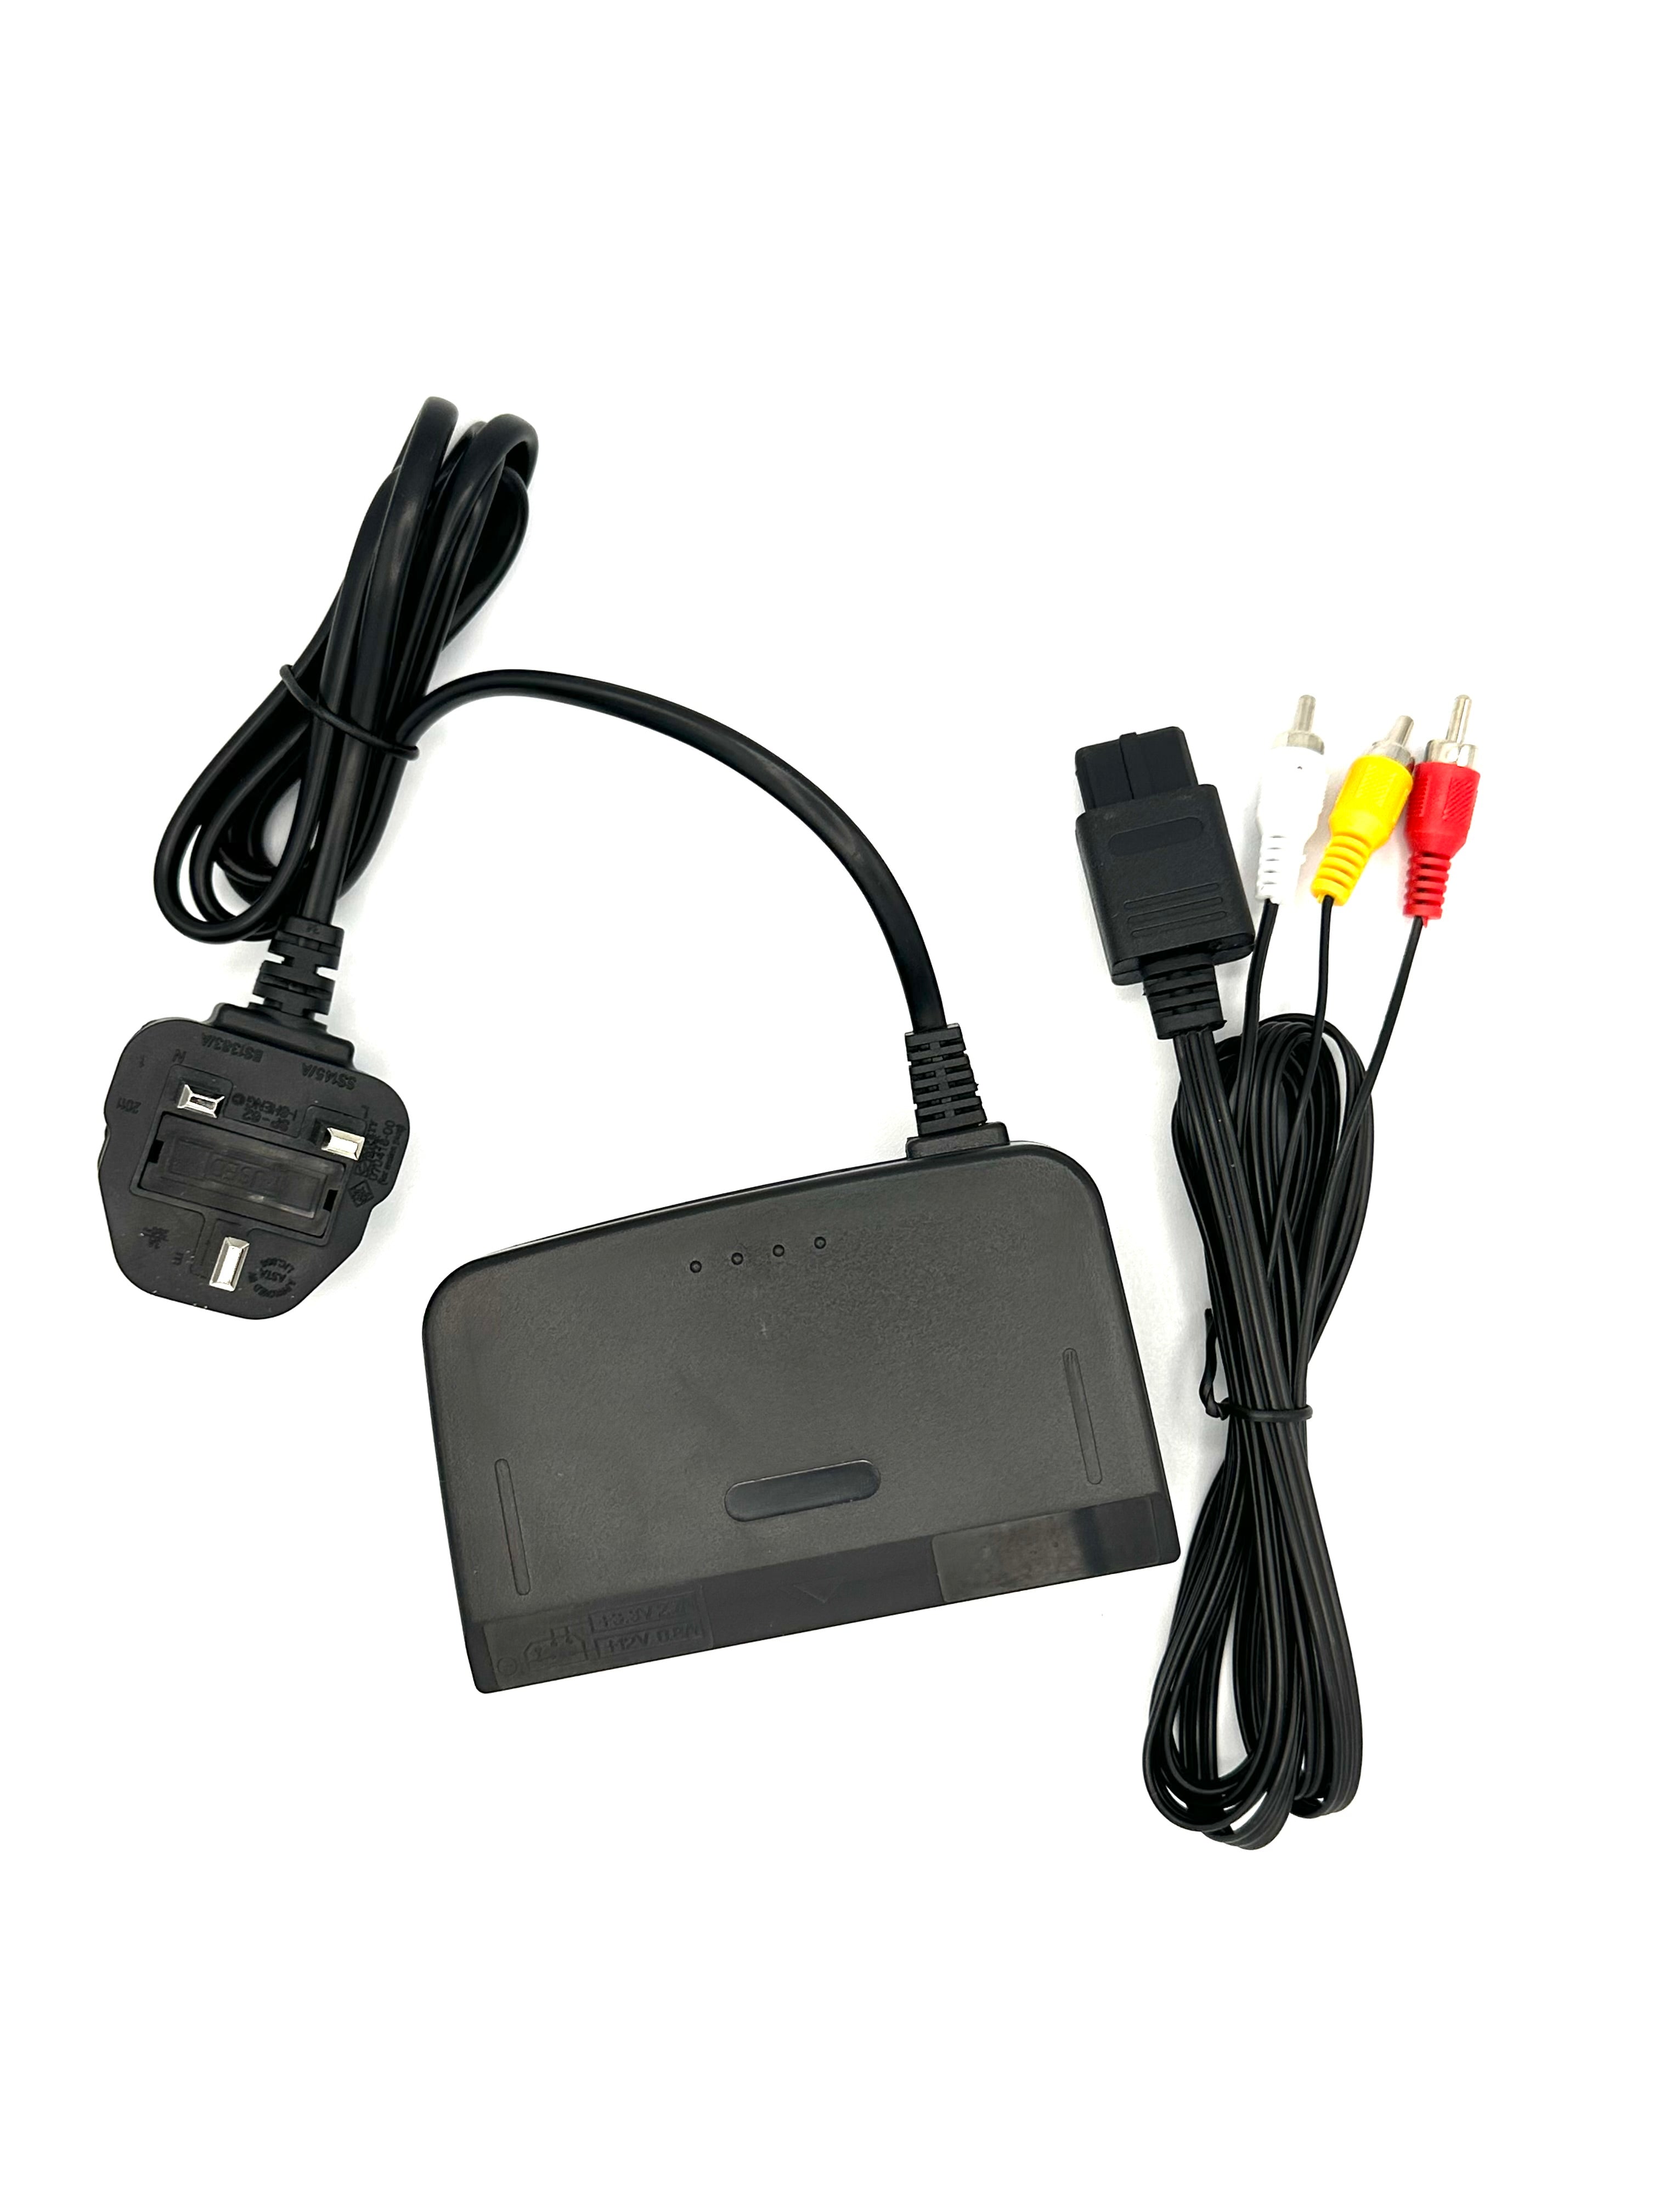 Nintendo 64 Power Supply Adapter & AV Cable